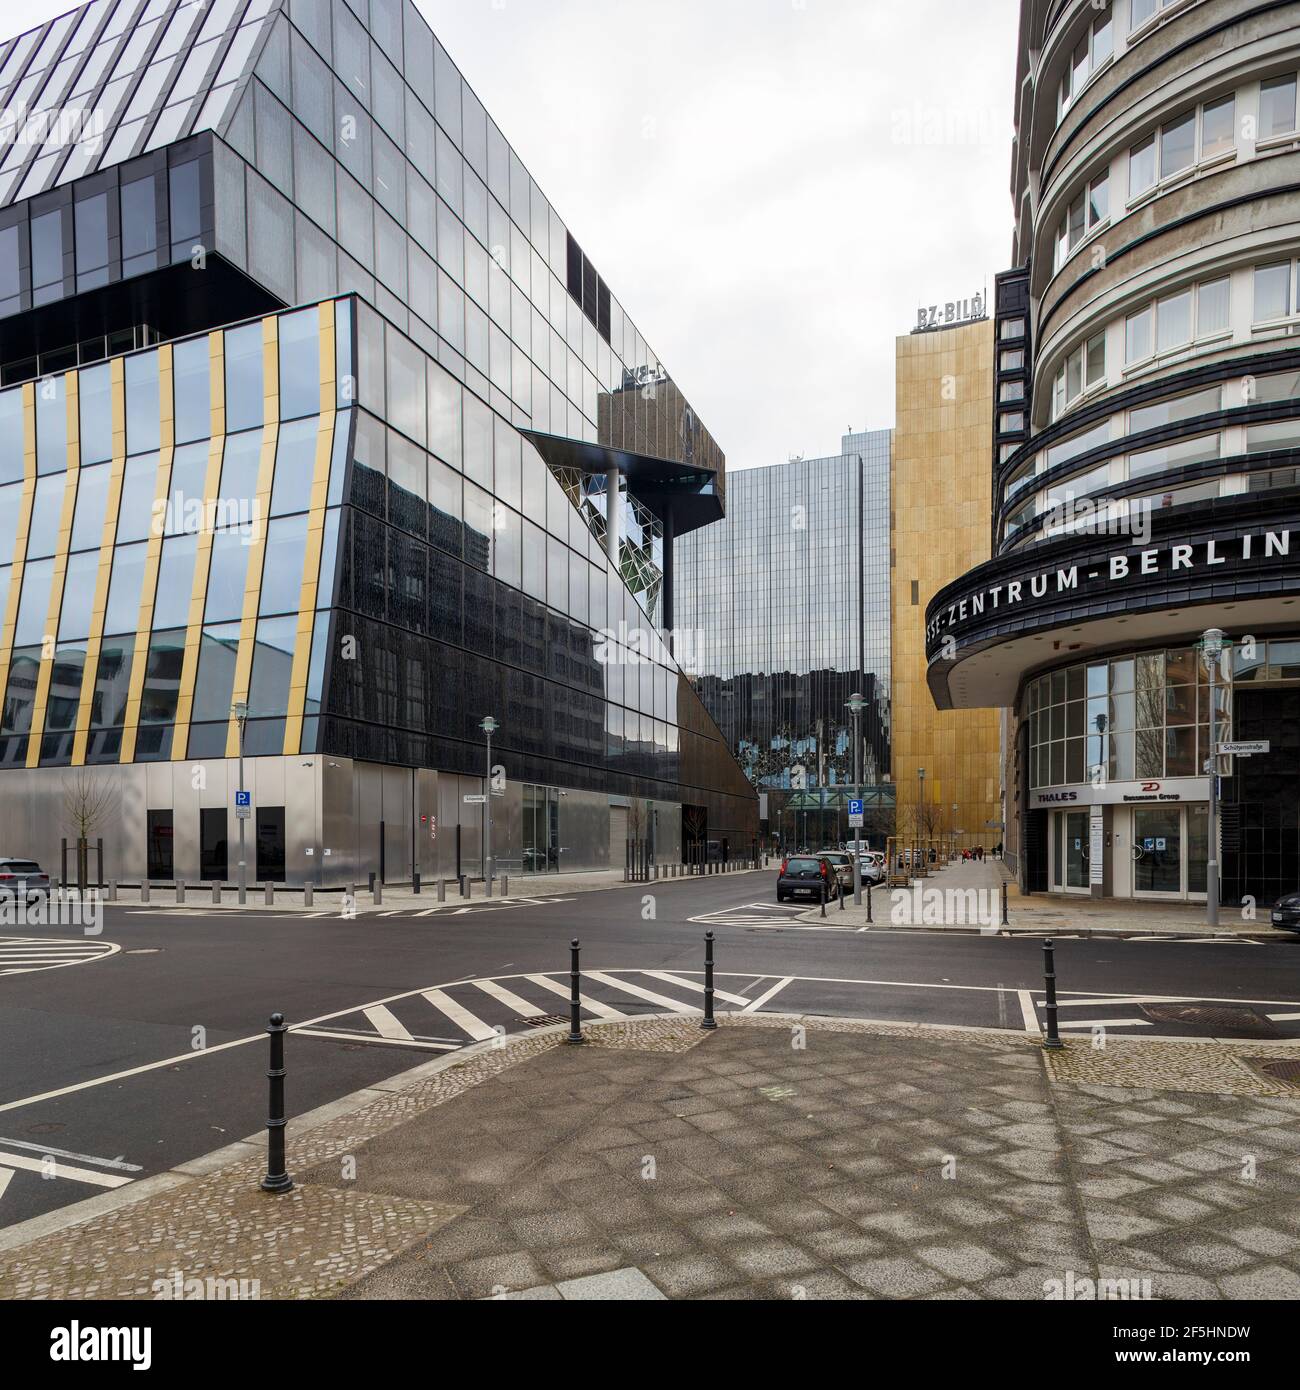 Berlino, Germania 12-29-2020 Axel Springer nuovo edificio a Berlino (a destra) progettato da REM Koolhaas, e la Mossehaus (a sinistra), con una facciata riprogettata Foto Stock